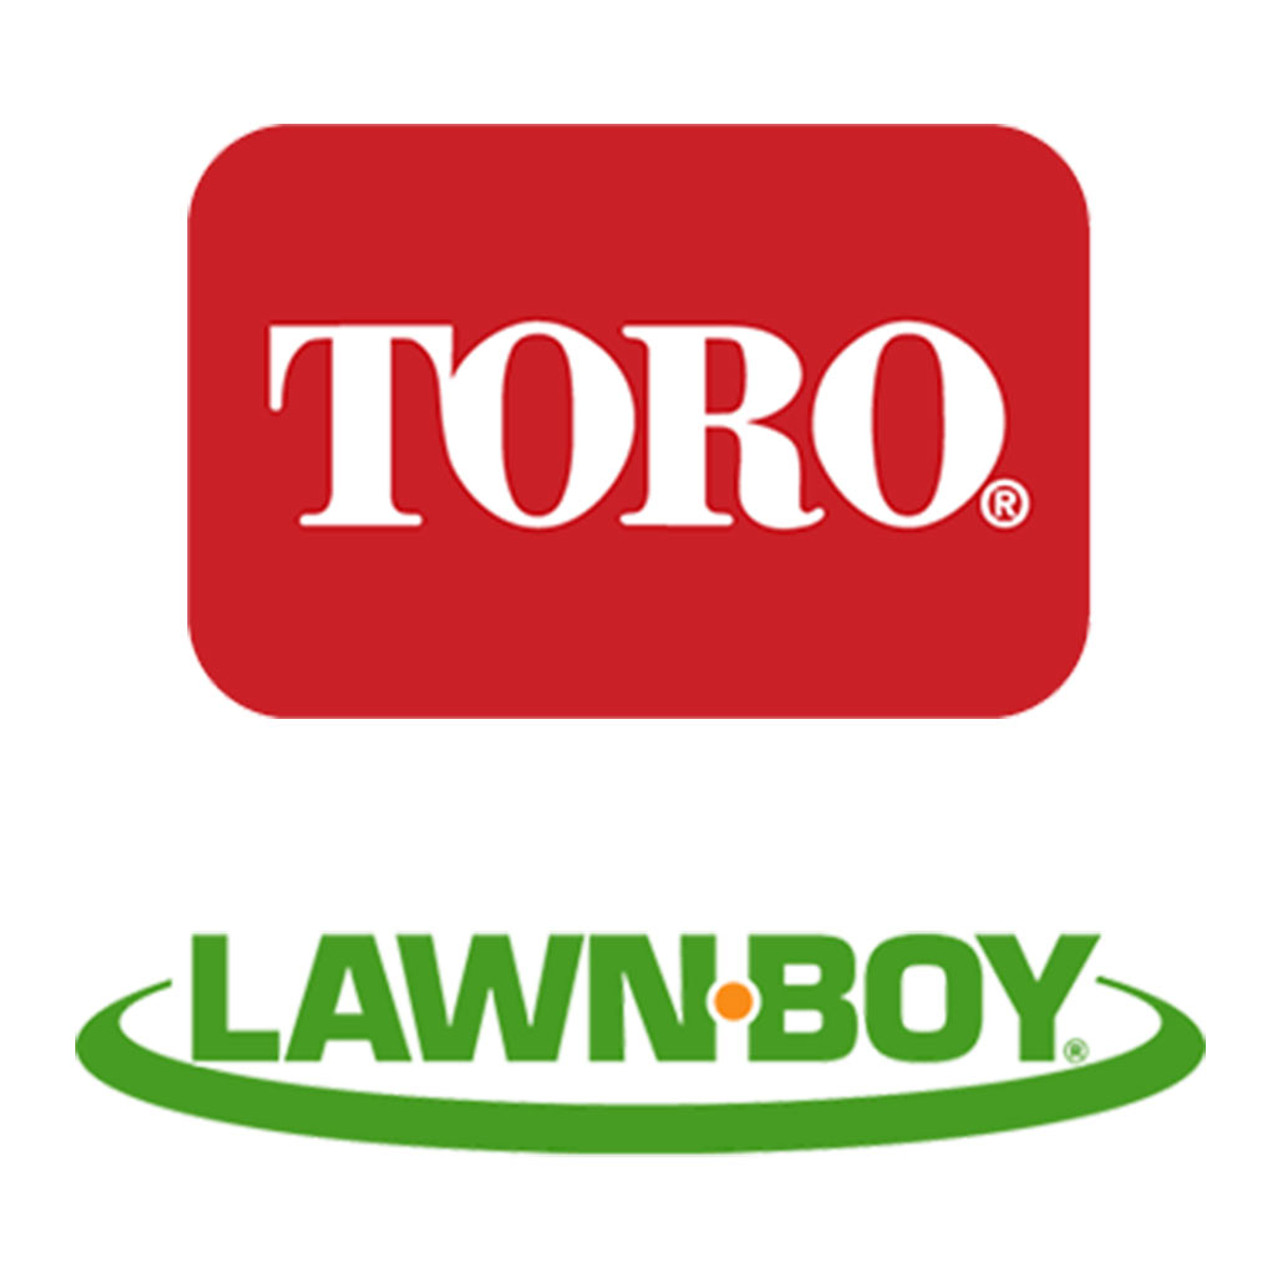 Toro Lawn-Boy 125-1072-03 Blade-Bagging, 21-Inch